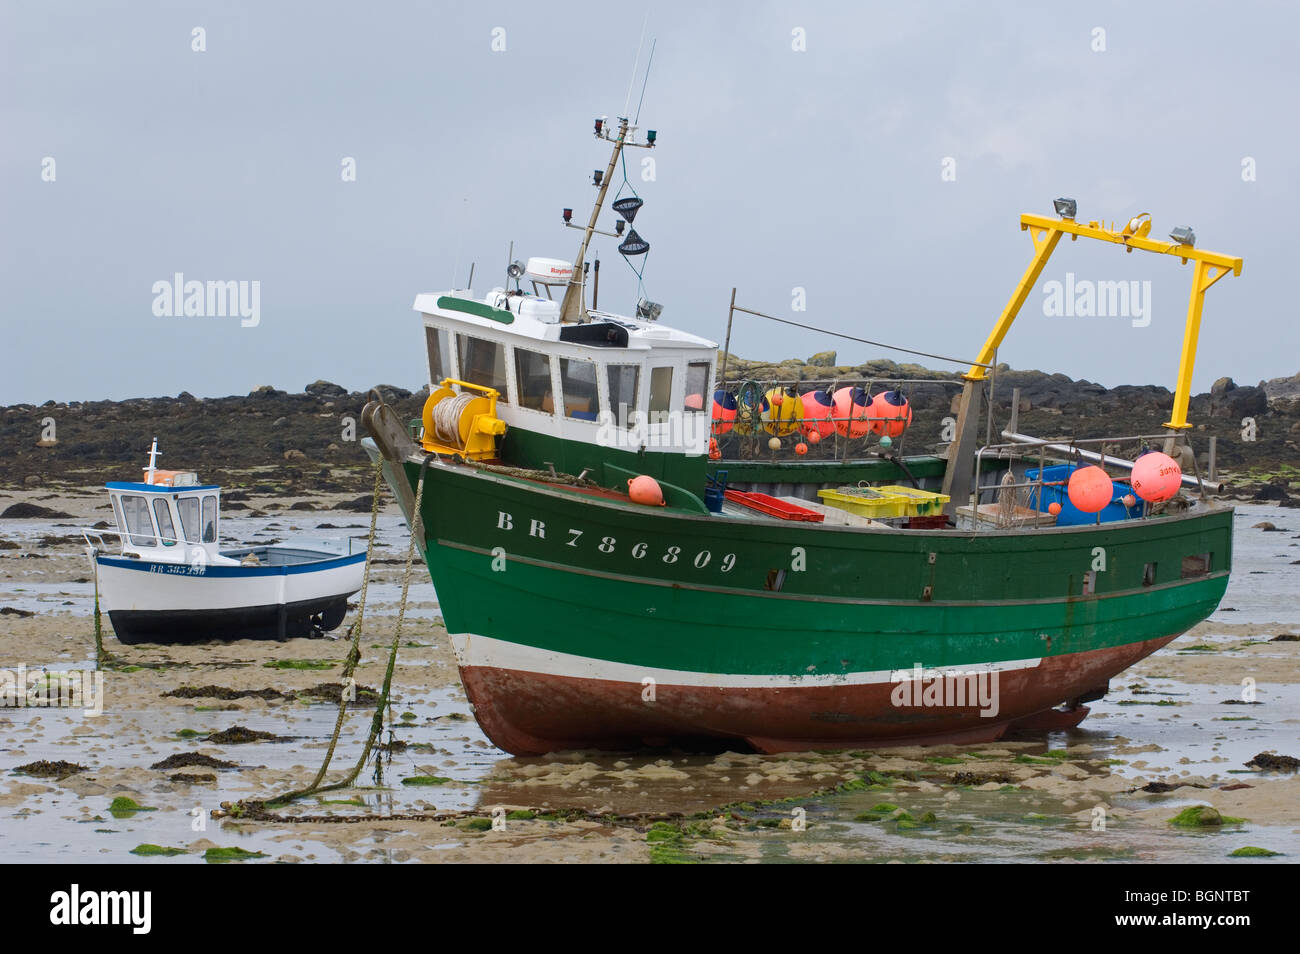 Bateaux de pêche sur la plage à marée basse, Bretagne, France Banque D'Images